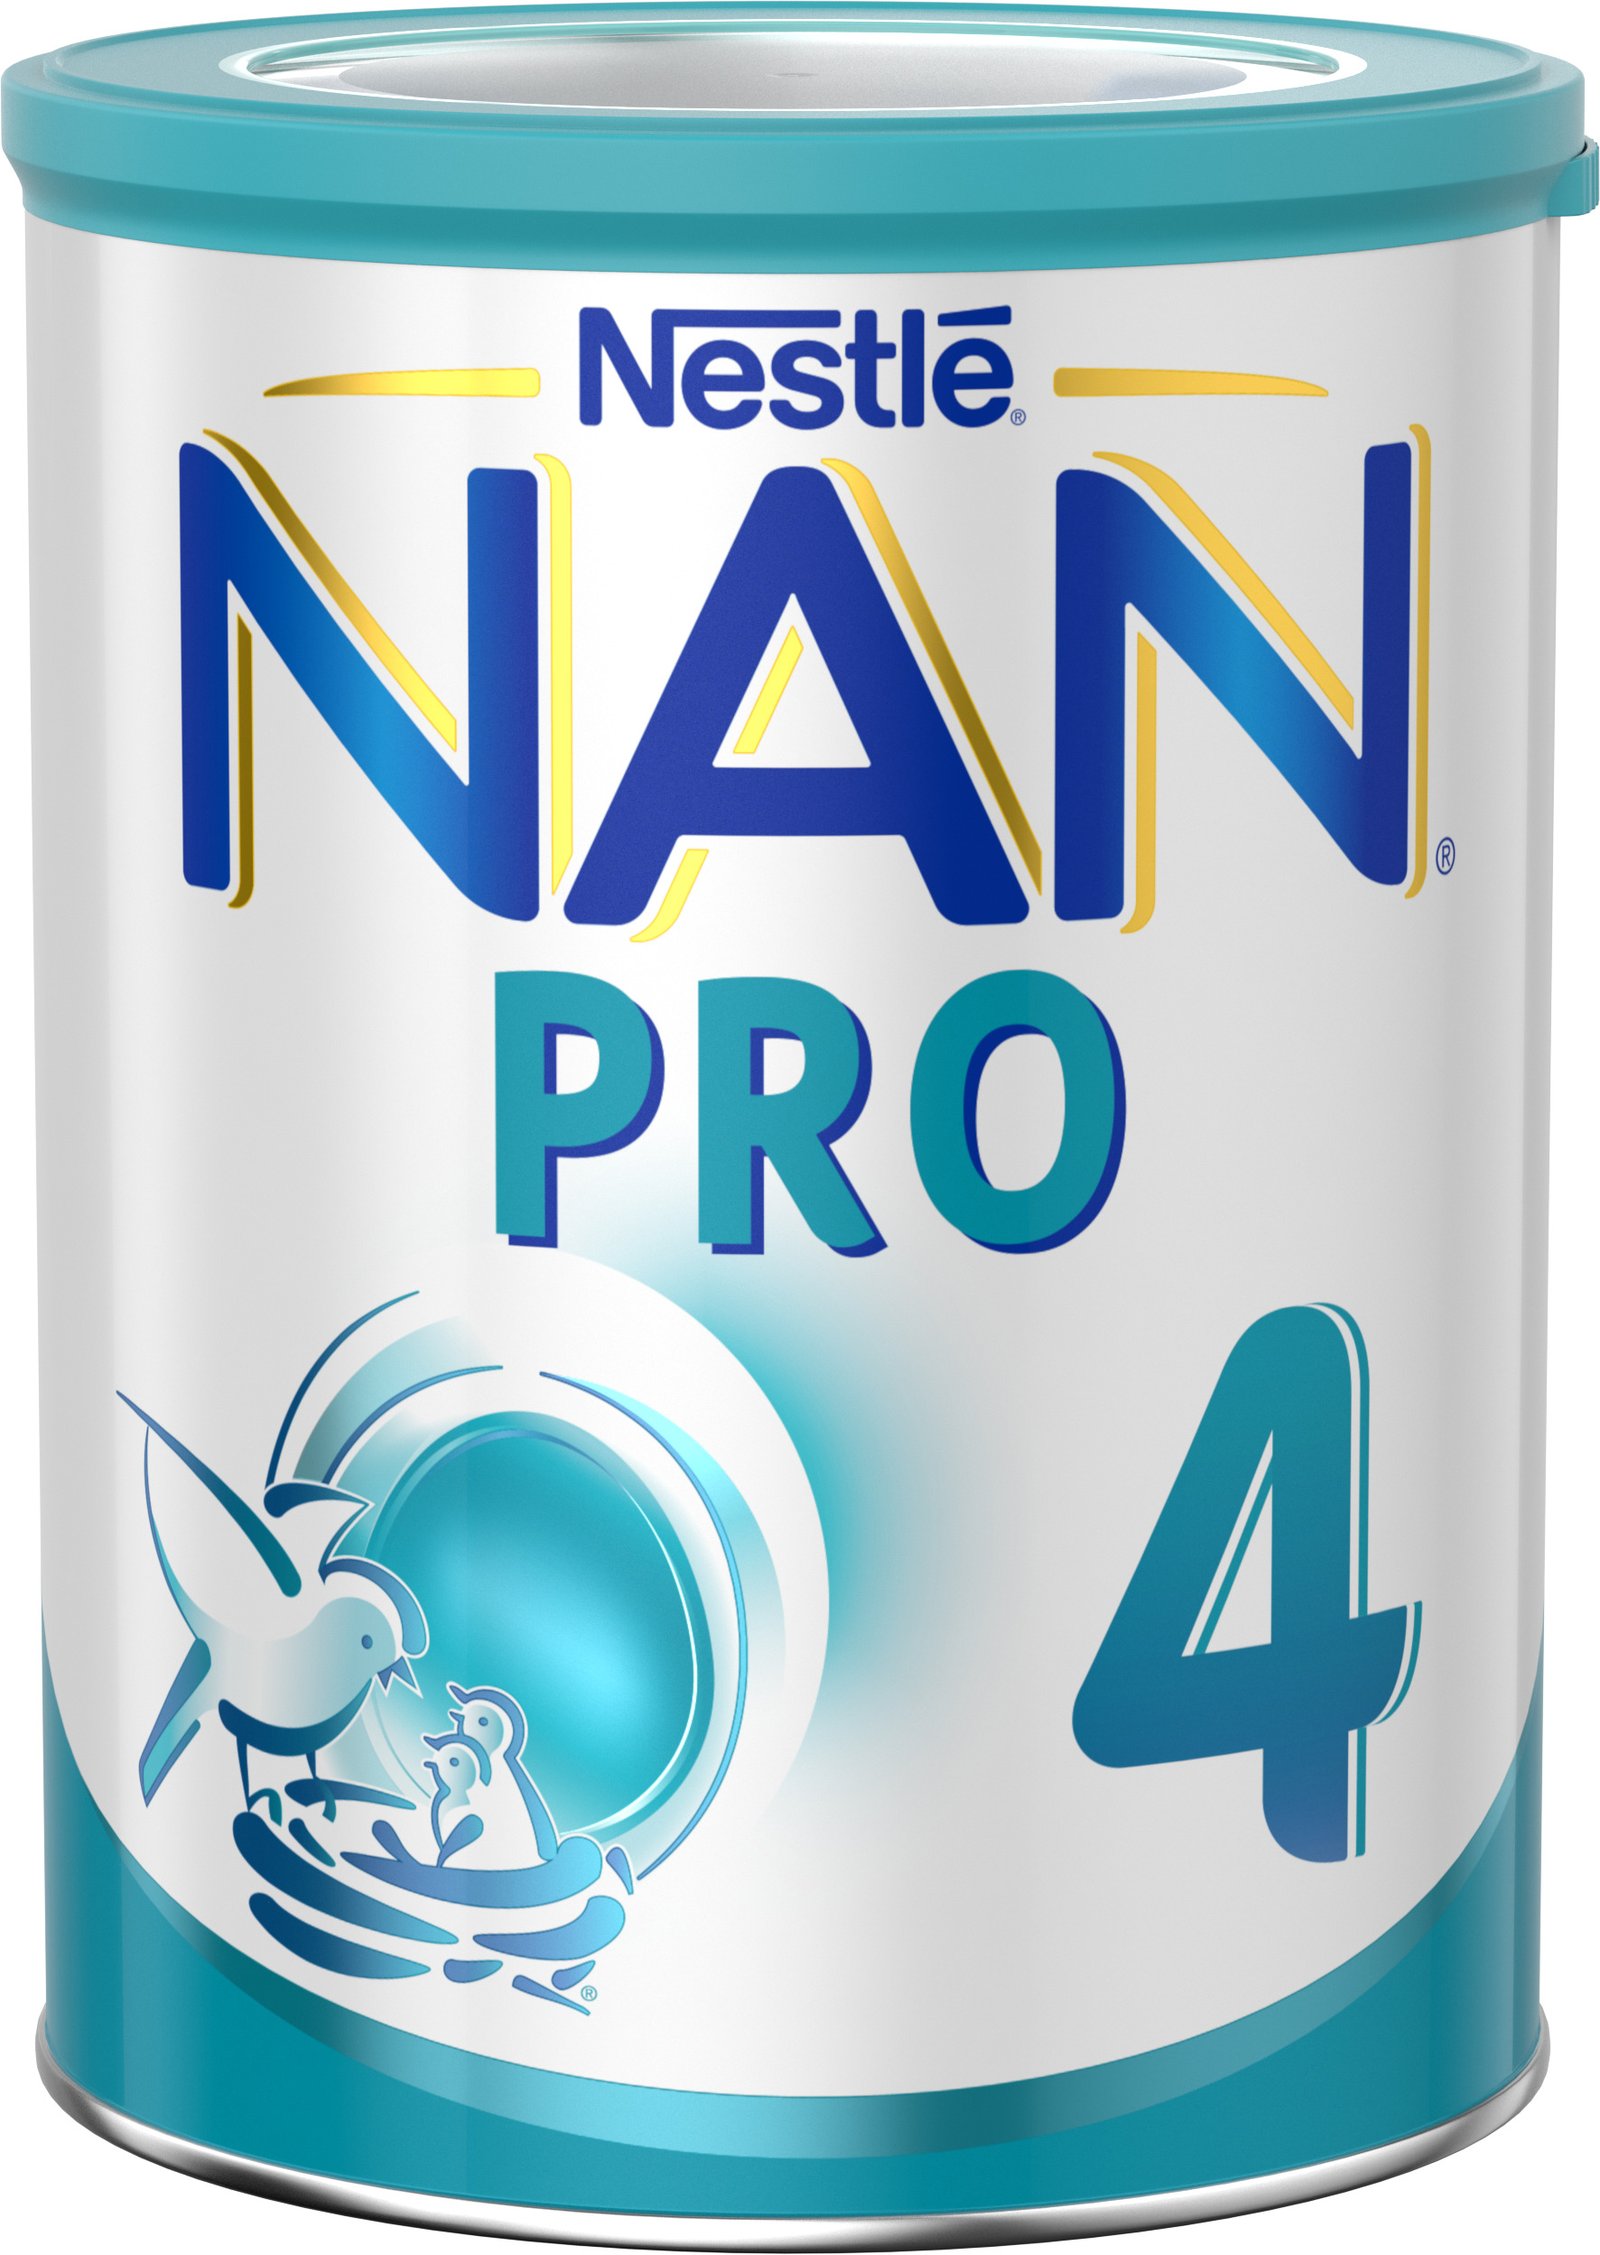 Nestlé NAN PRO4 Mjölkdryck 800g